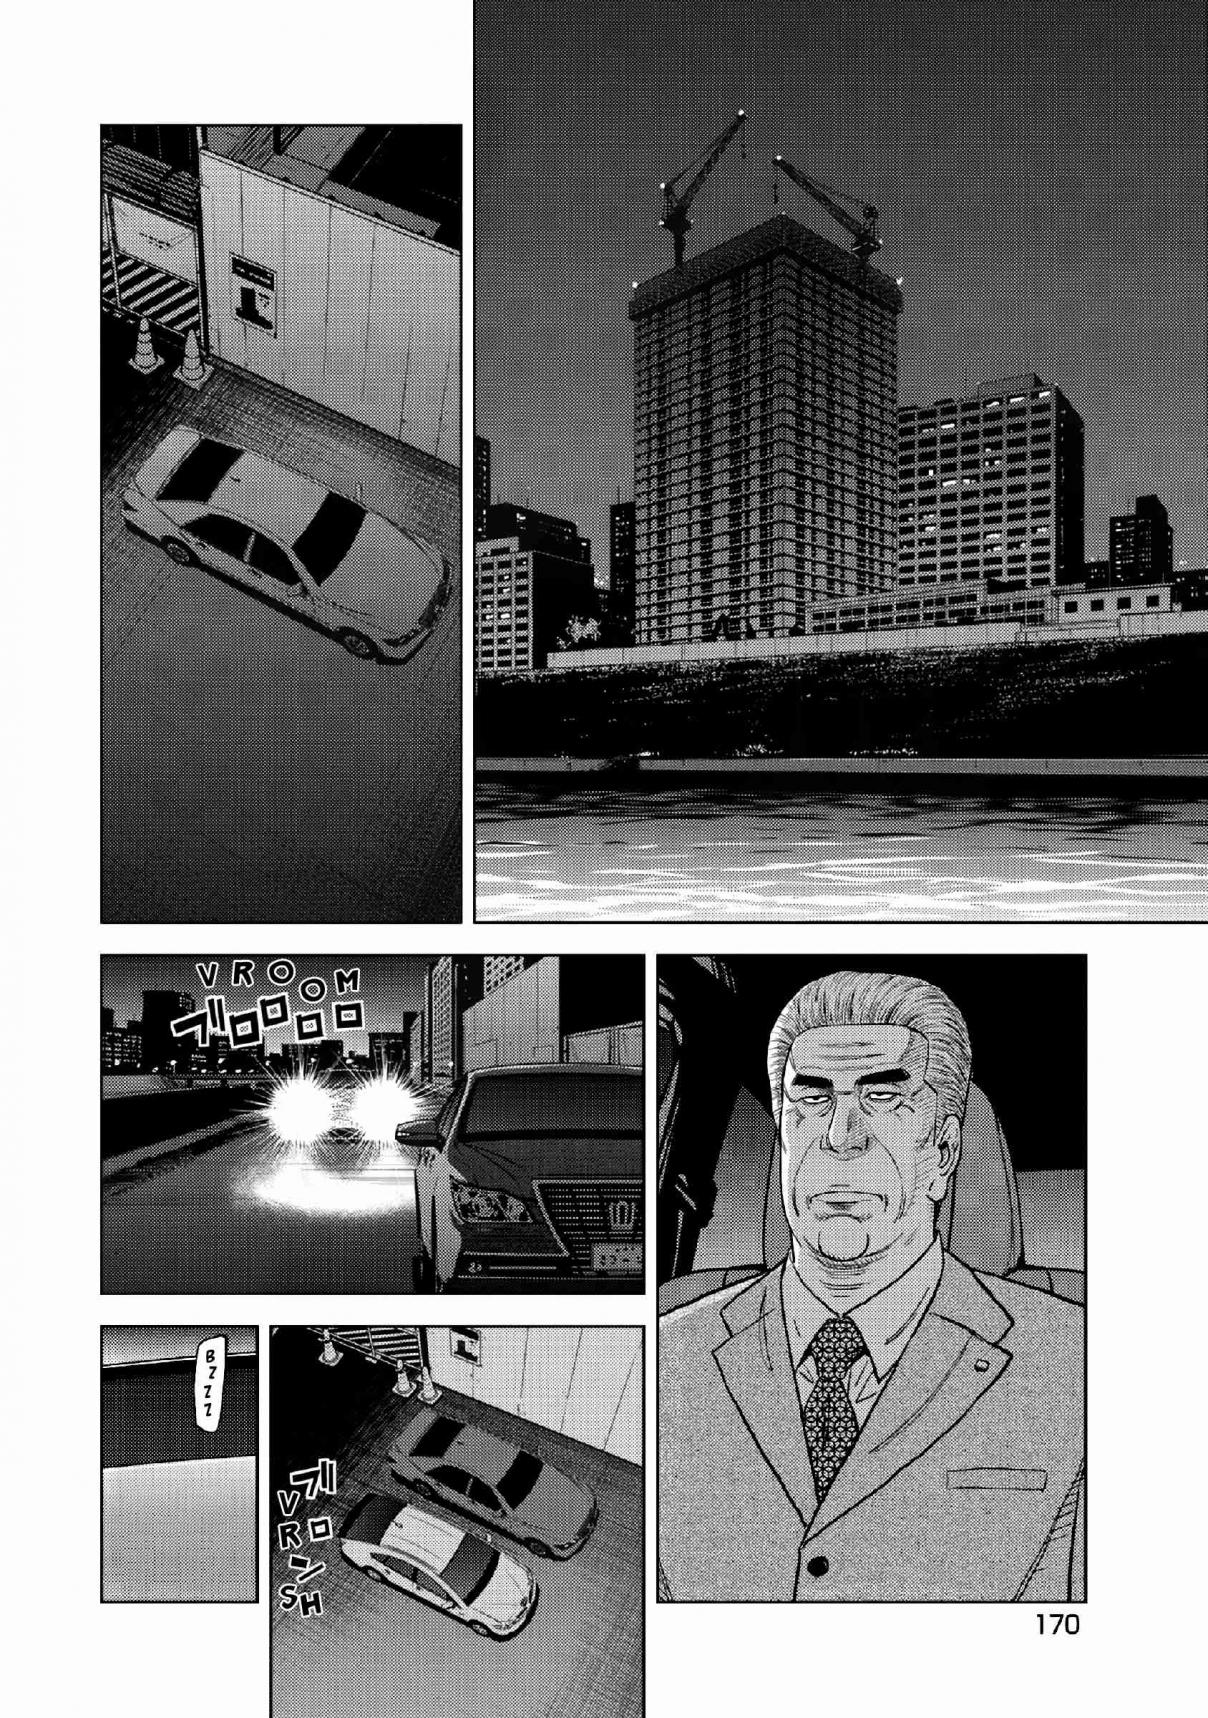 Inspector Kurokochi Vol. 2 Ch. 15 White Hot Inspector